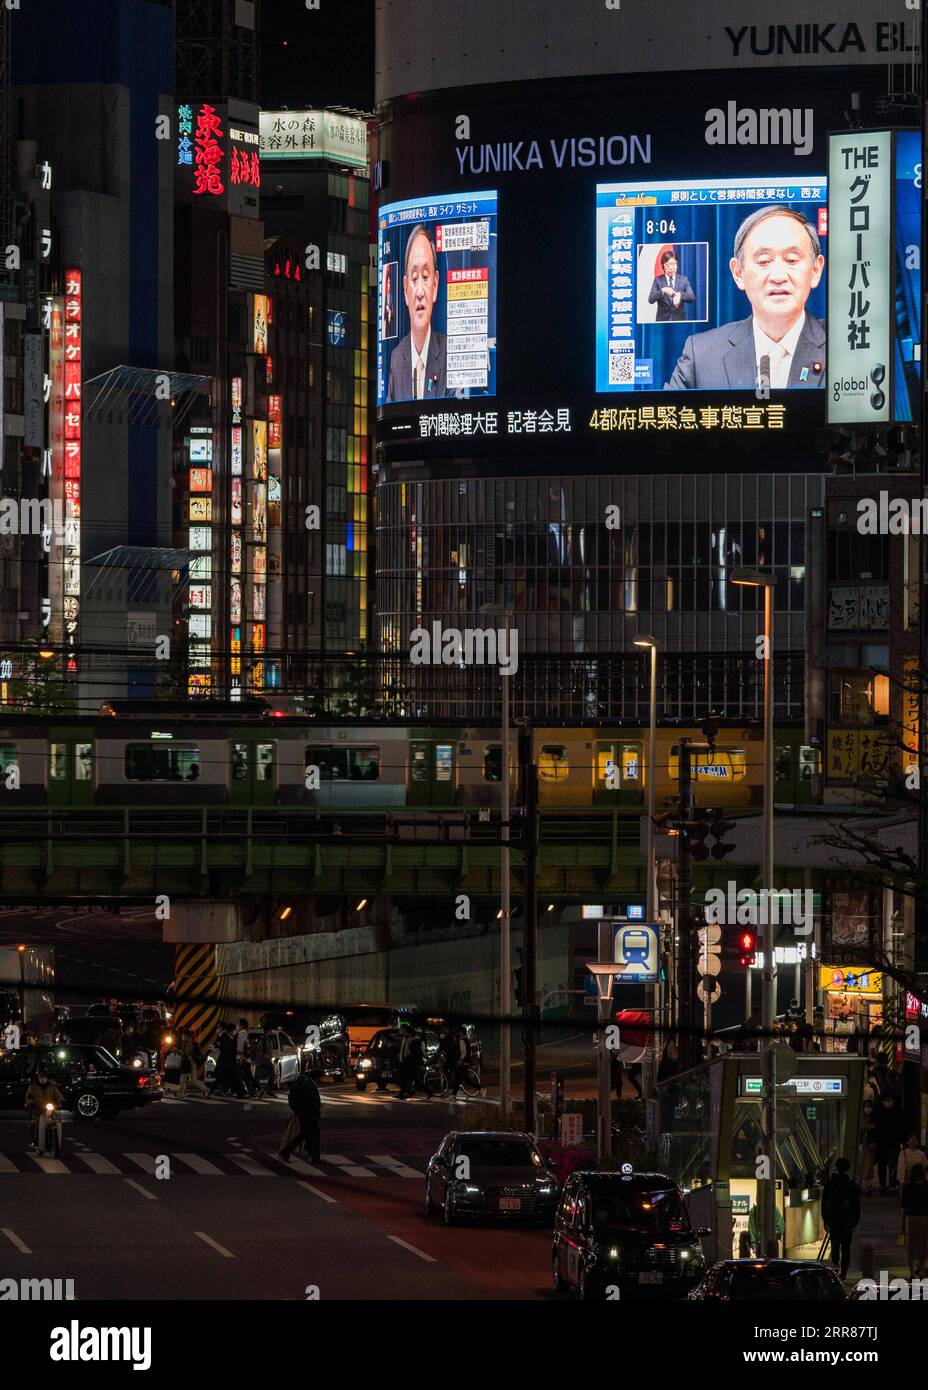 210423 -- TOKIO, 23. April 2021 -- Japans Premierminister Yoshihide Suga wird auf Außenbildschirmen während einer Pressekonferenz gezeigt, als er am 23. April 2021 in Tokio, Japan, den Ausnahmezustand wegen COVID-19 ausruft. Yoshihide Suga hat am Freitag in Tokio, Osaka, Kyoto und Hyogo einen dritten Ausnahmezustand wegen COVID-19 ausgerufen. Der Ausnahmezustand tritt von Sonntag bis 11. Mai in Kraft. Foto: /Xinhua JAPAN-TOKIO-COVID-19-NOTSTAND ChristopherxJue PUBLICATIONxNOTxINxCHN Stockfoto